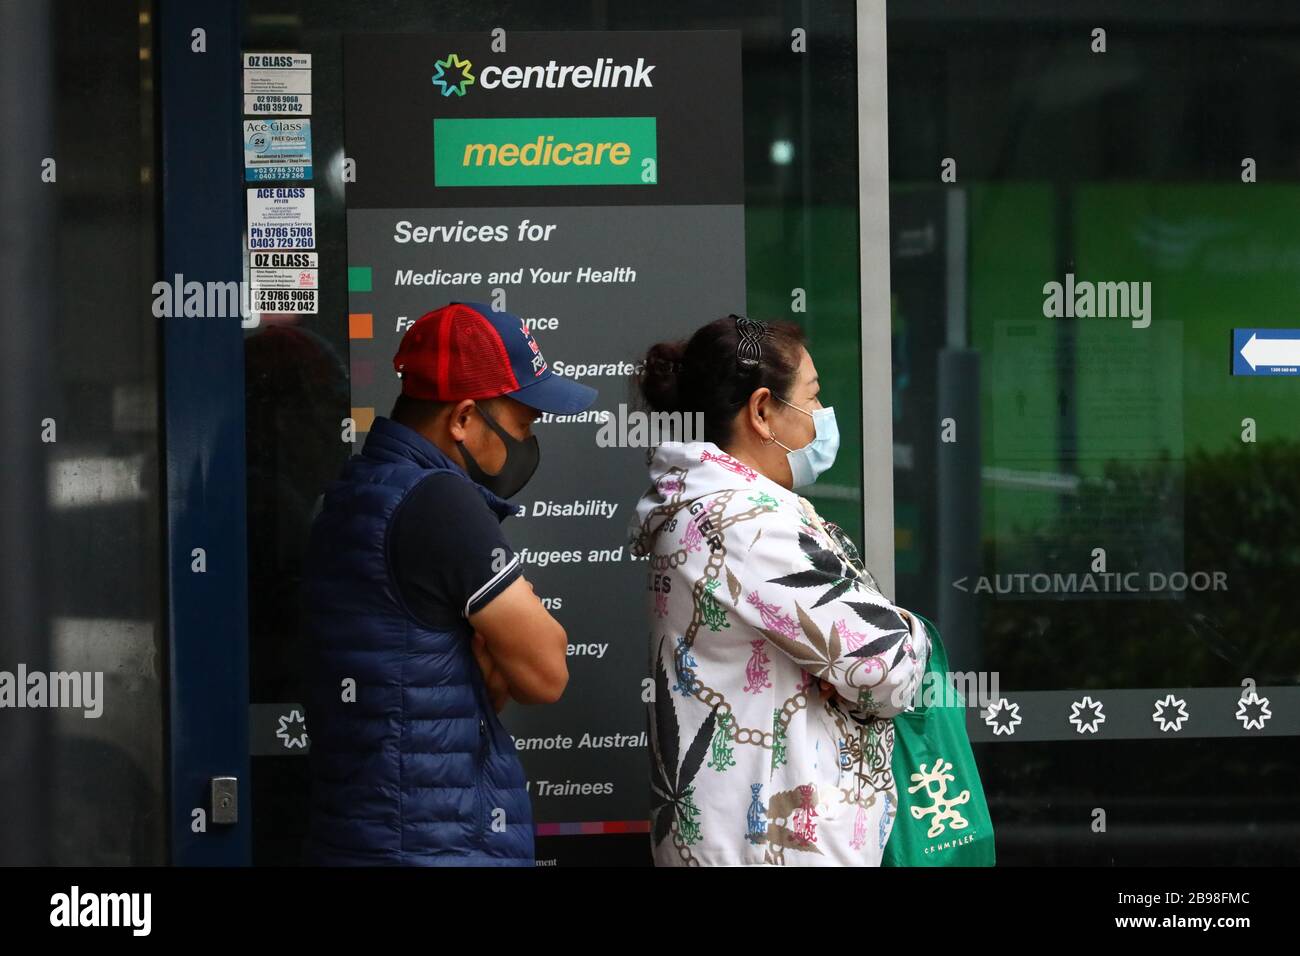 SYDNEY, AUSTRALIE, 24 mars 2020, les gens se rendent dans un centre de services Centerlink à Burwood, Sydney, après que les pertes d'emploi dues au coronavirus ont provoqué une hausse de la demande de paiements de chômage. Crédit: Sebastian Reategui/Alay Live News Banque D'Images